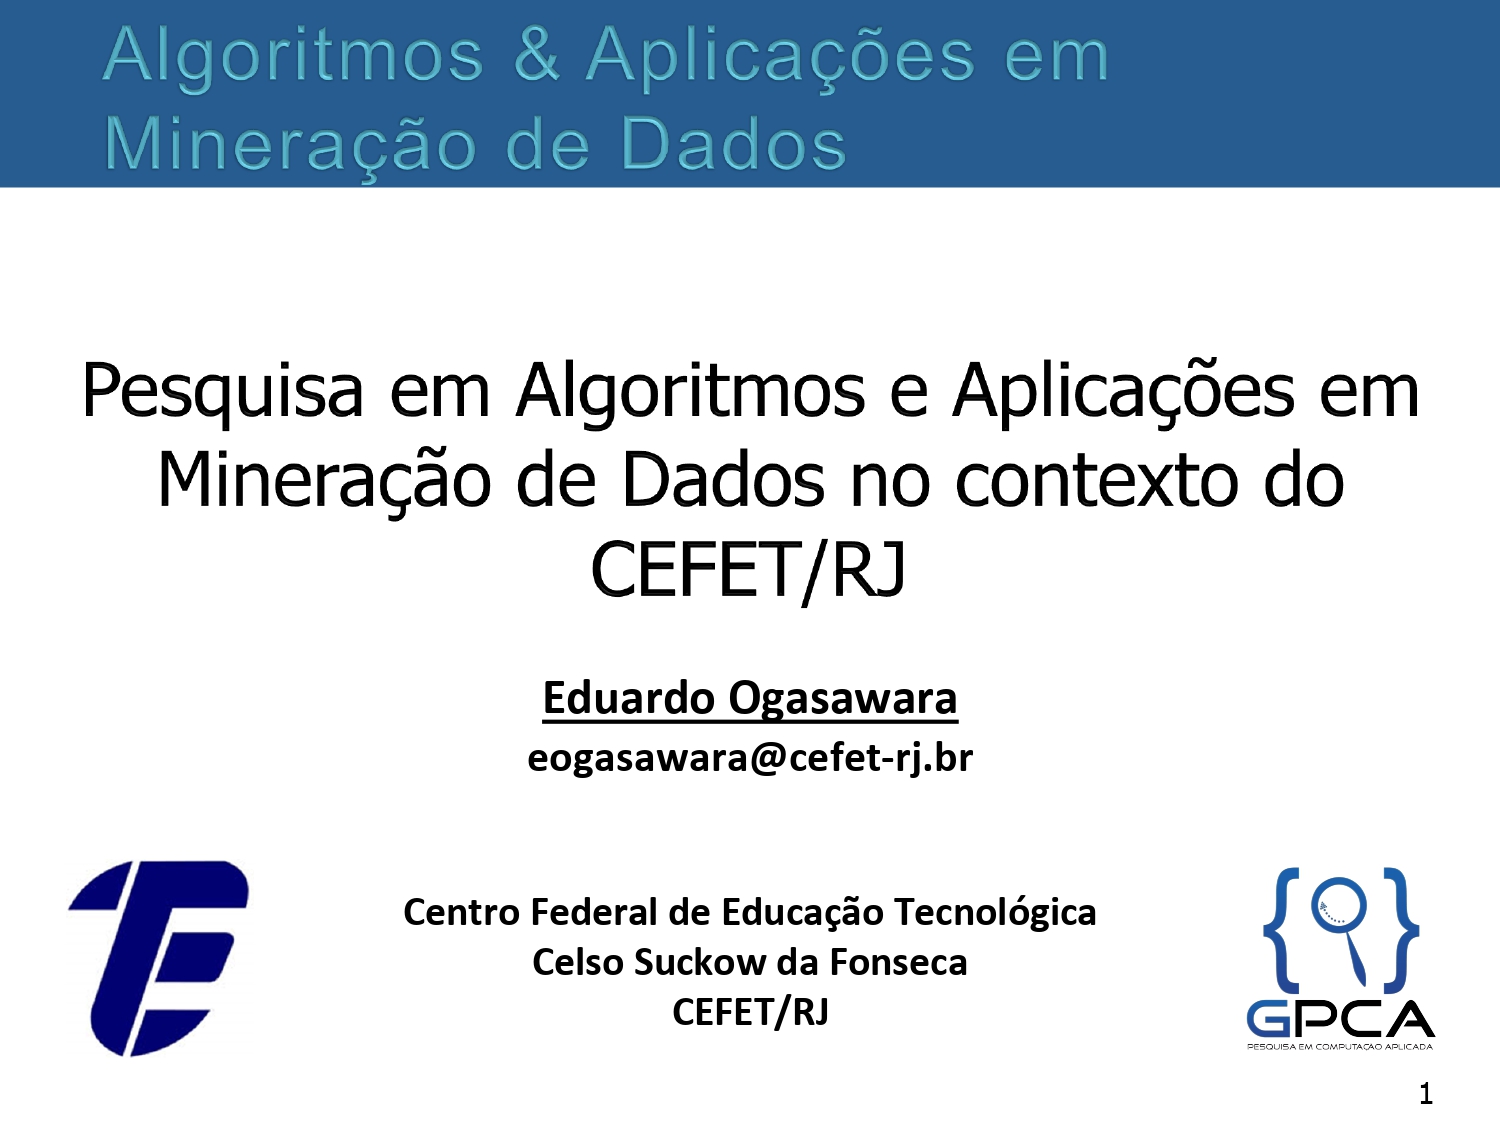 Pesquisa em Algoritmos e Aplicações em Mineração de Dados no Contexto do CEFET/RJ